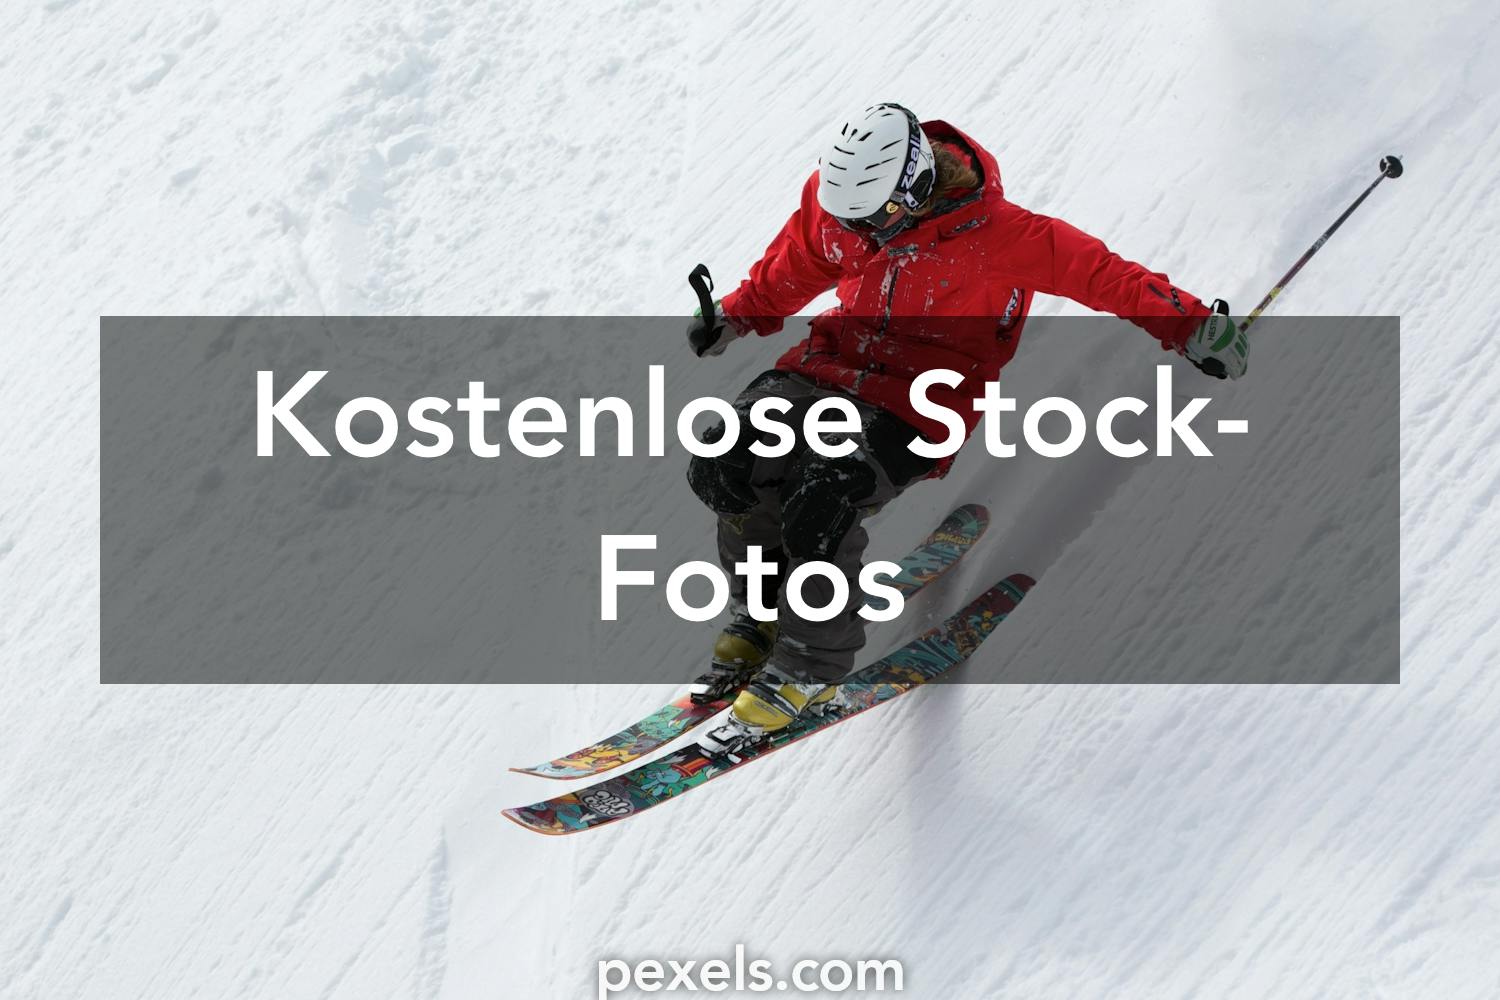 250 Ski Fotos Pexels Kostenlose Stock Fotos